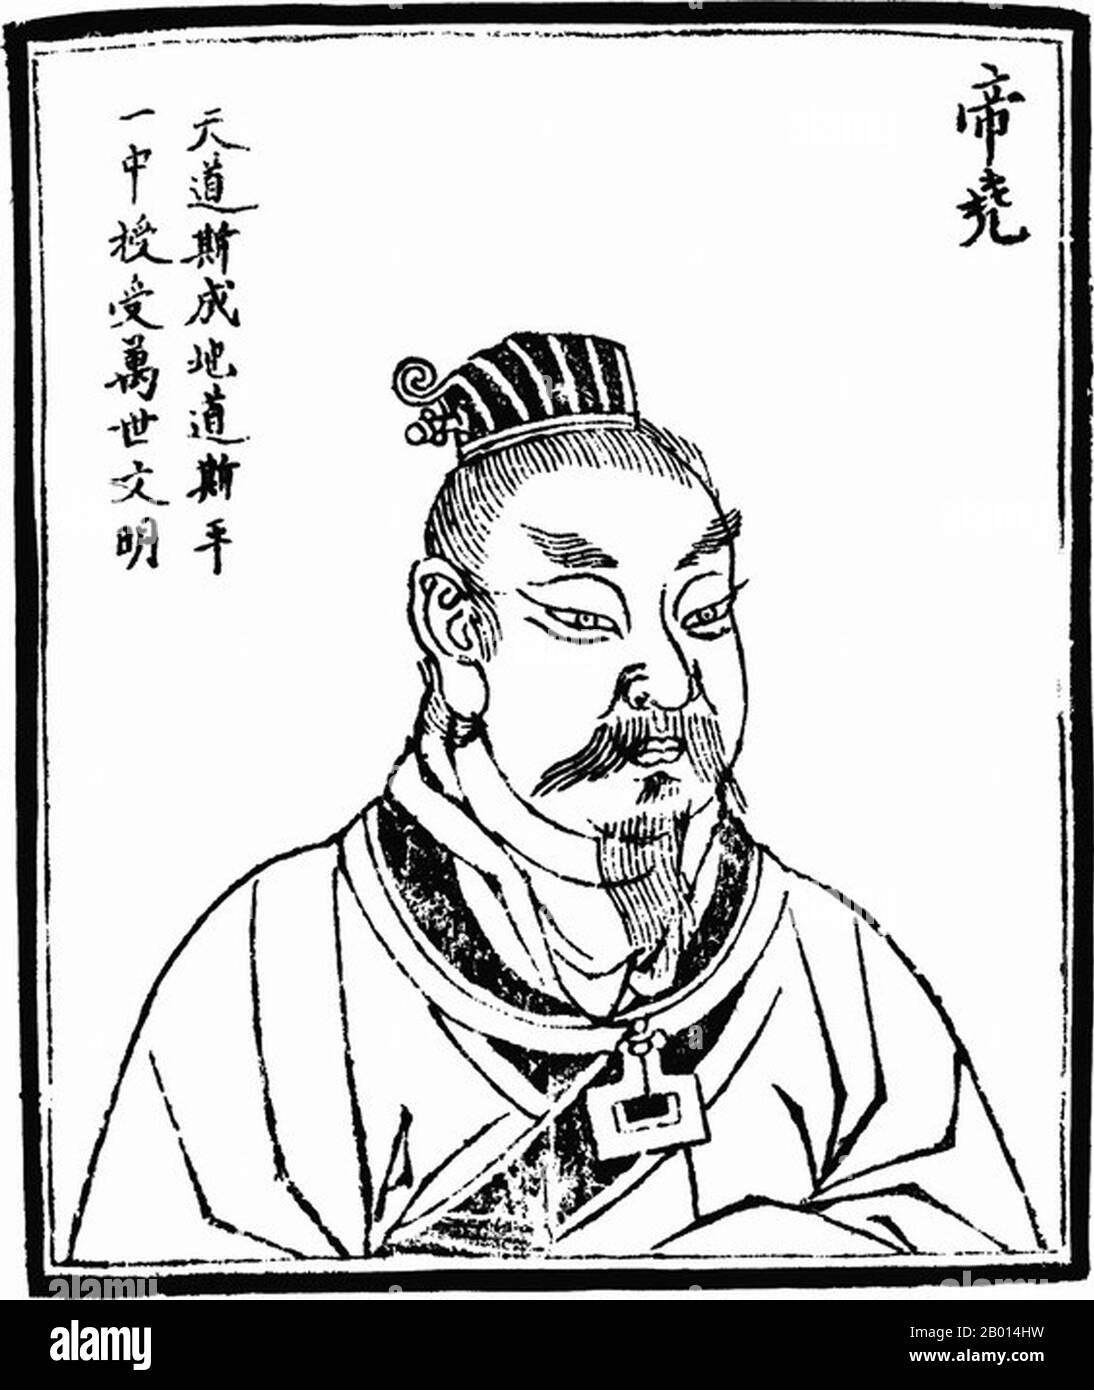 China: Kaiser Yao (c. 2356-2255 v. Chr.), dem vierten der legendären „fünf Kaiser“. Abbildung, c. 1498. Yao, auch bekannt als Tang Yao, war ein legendärer chinesischer Herrscher, einer der drei Herrscher und fünf Kaiser. Den Legenden zufolge wurde er im Alter von 20 Jahren Kaiser, regierte 73 Jahre lang, bevor er Shun dem Großen abdankte, dem er seine beiden Töchter zur Ehe gegeben hatte. Die große Sintflut begann während seiner Herrschaft. Er starb im Alter von 119 Jahren. Die drei Herrscher und fünf Kaiser sind eine Mischung aus mythologischen Herrschern und kulturellen Helden aus dem alten China. Stockfoto